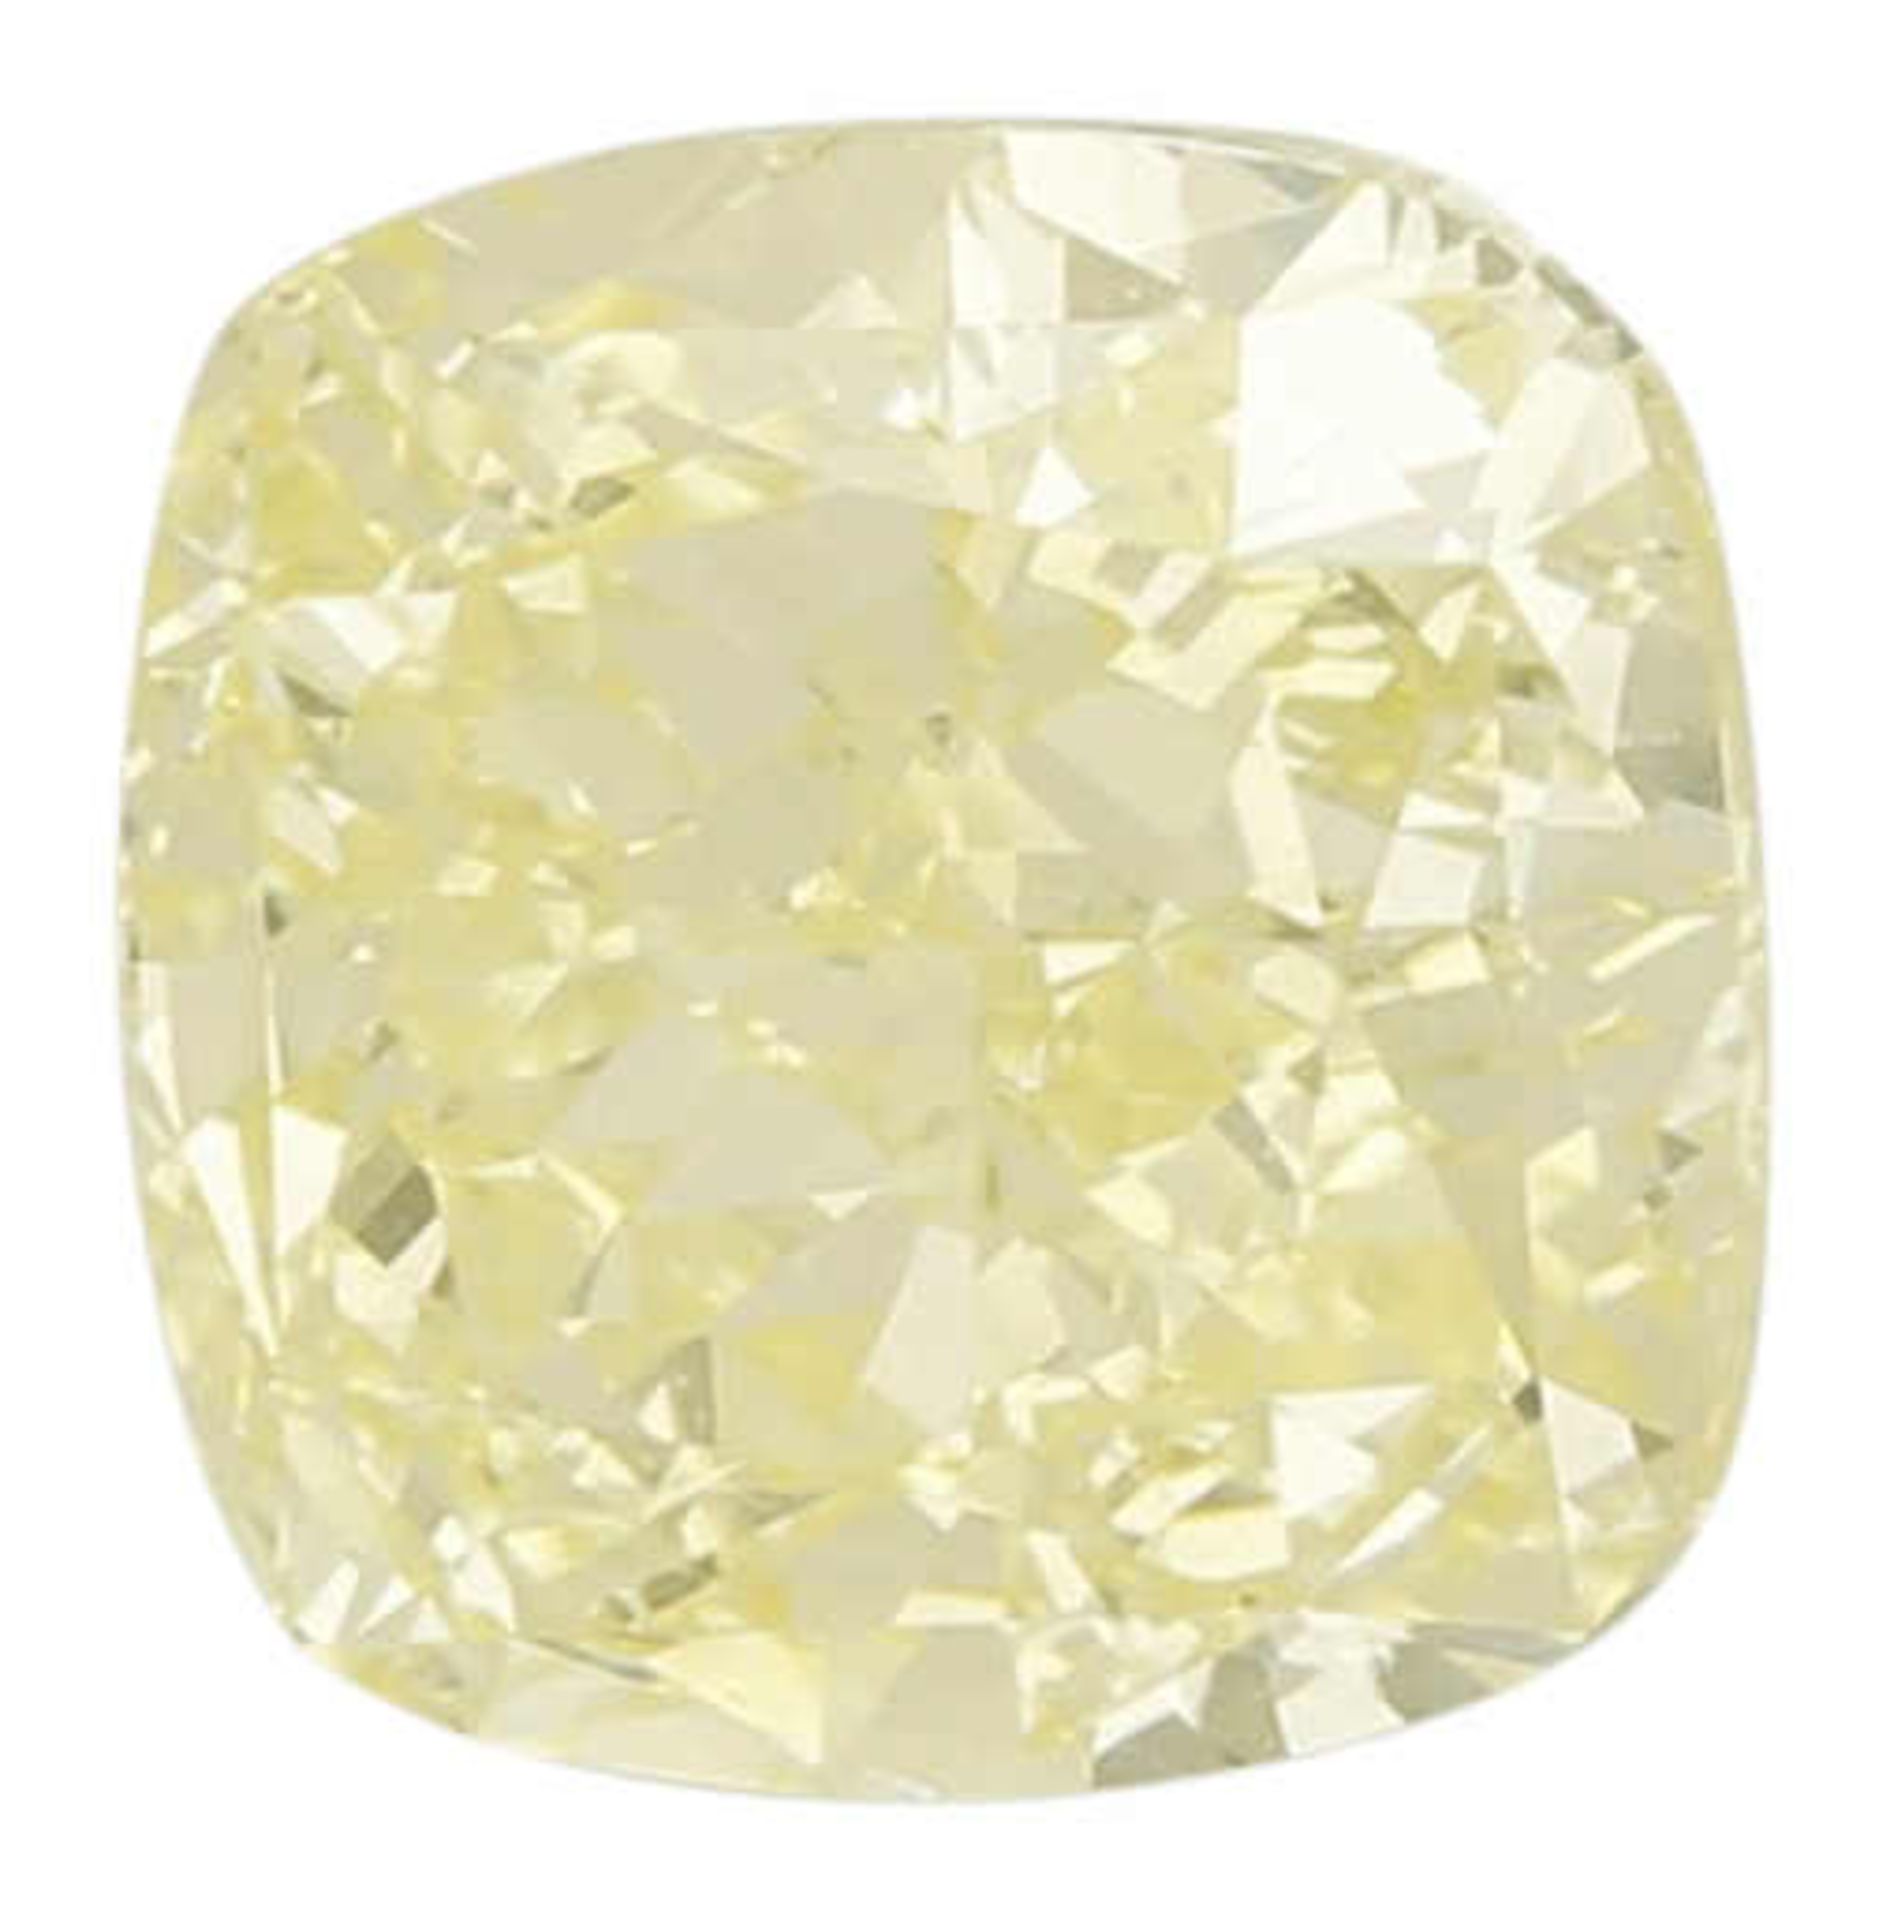 Fancy Diamond Natürlicher farbiger Diamant. Lupenreiner Diamant fancy light yellow von 3,51 ct.